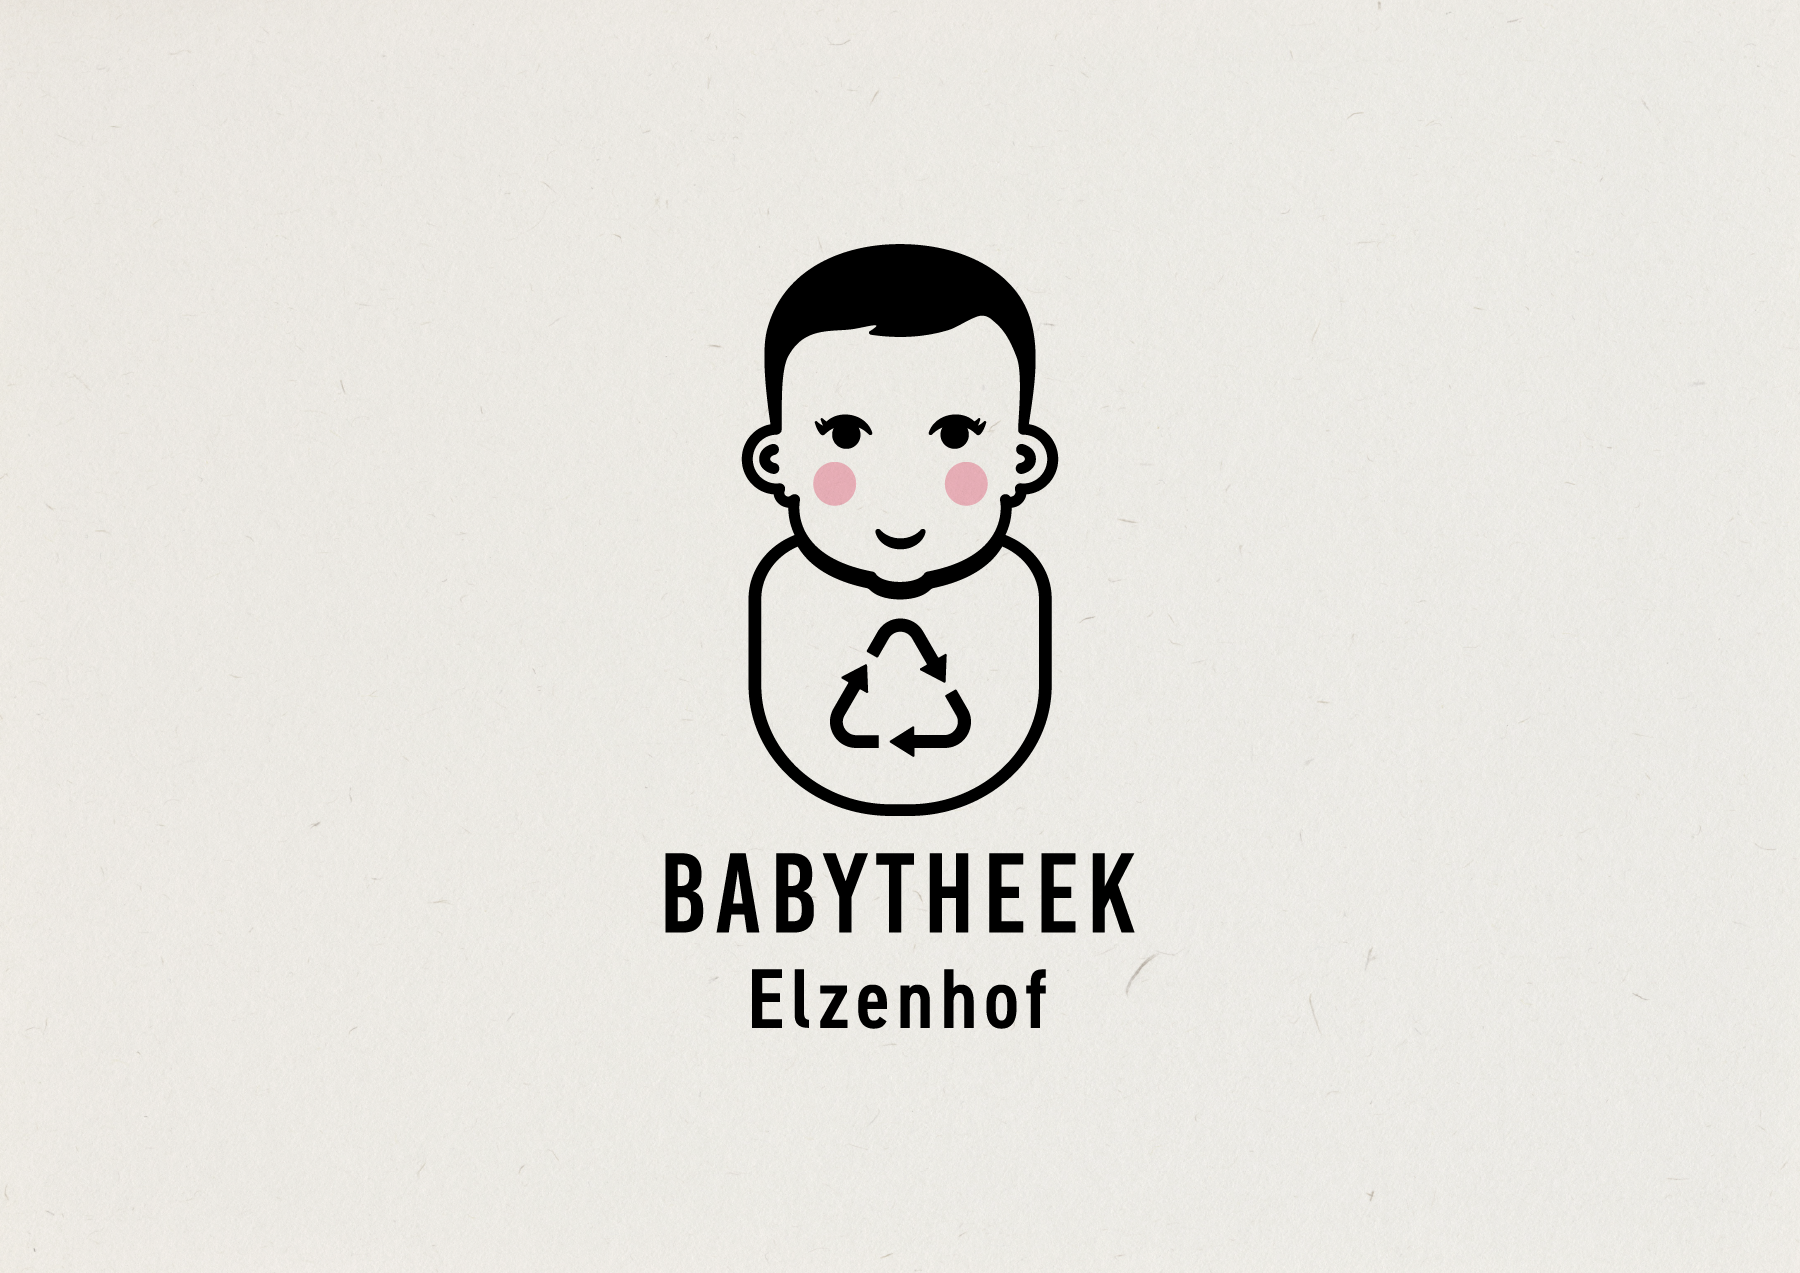 Babytheek logo